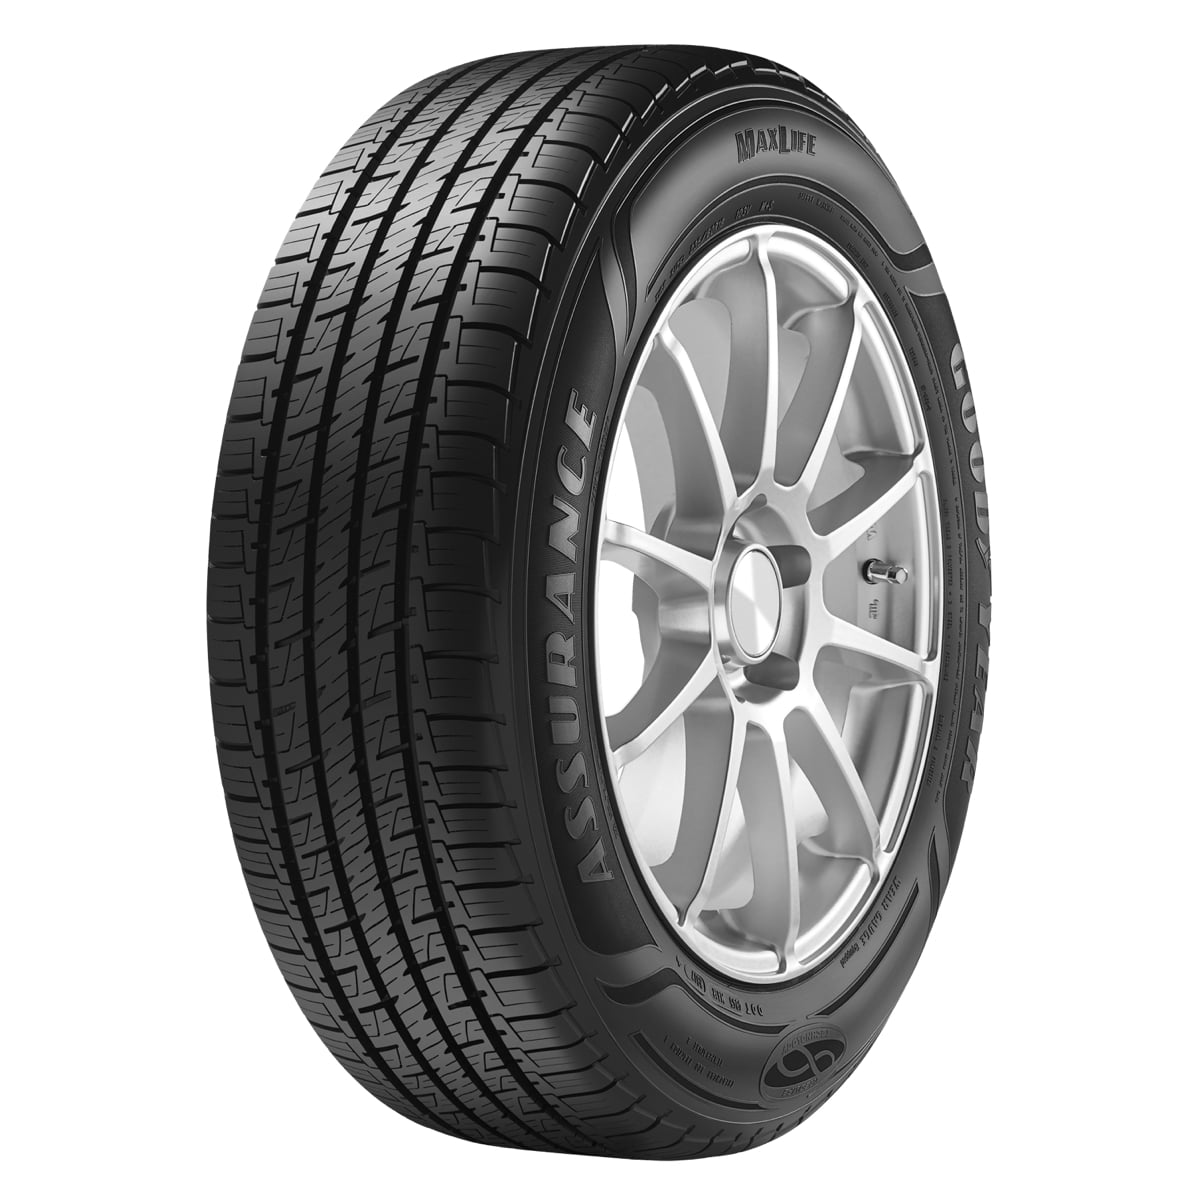 Goodyear Assurance Discount Tire